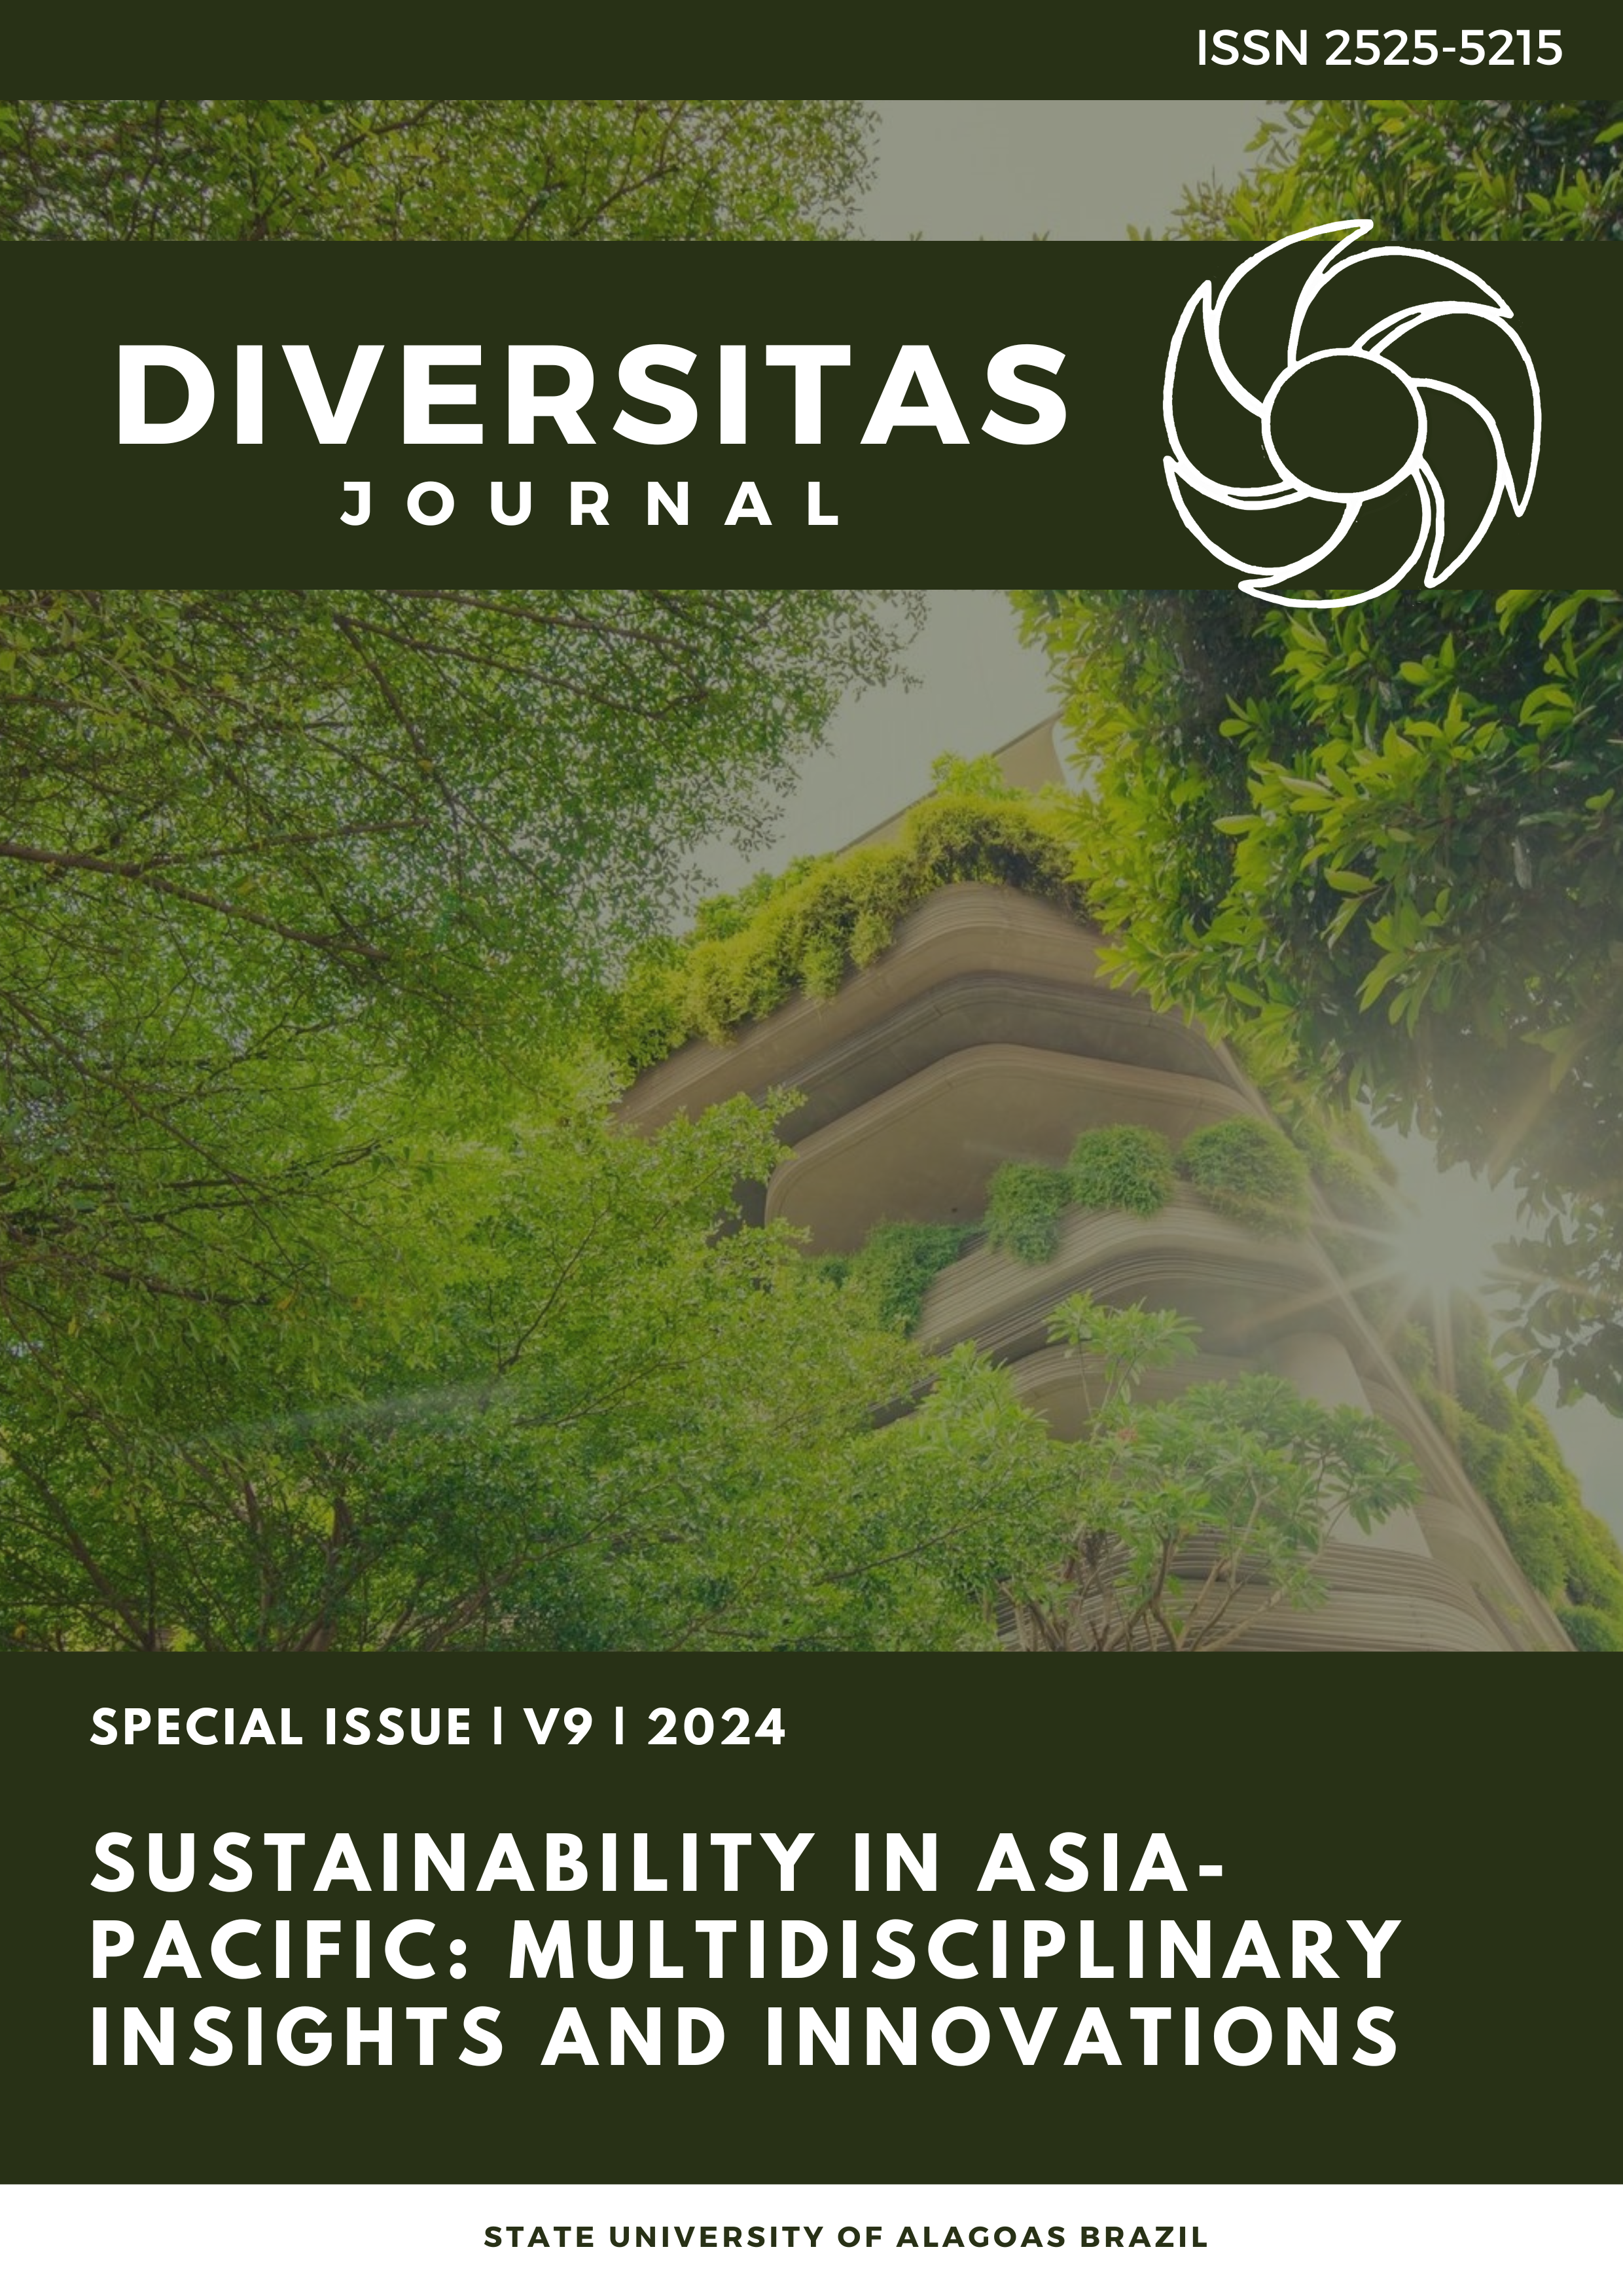 					Visualizar v. 9 n. 1_Special (2024): Sustentabilidade na Ásia-Pacífico: insights e inovações multidisciplinares
				